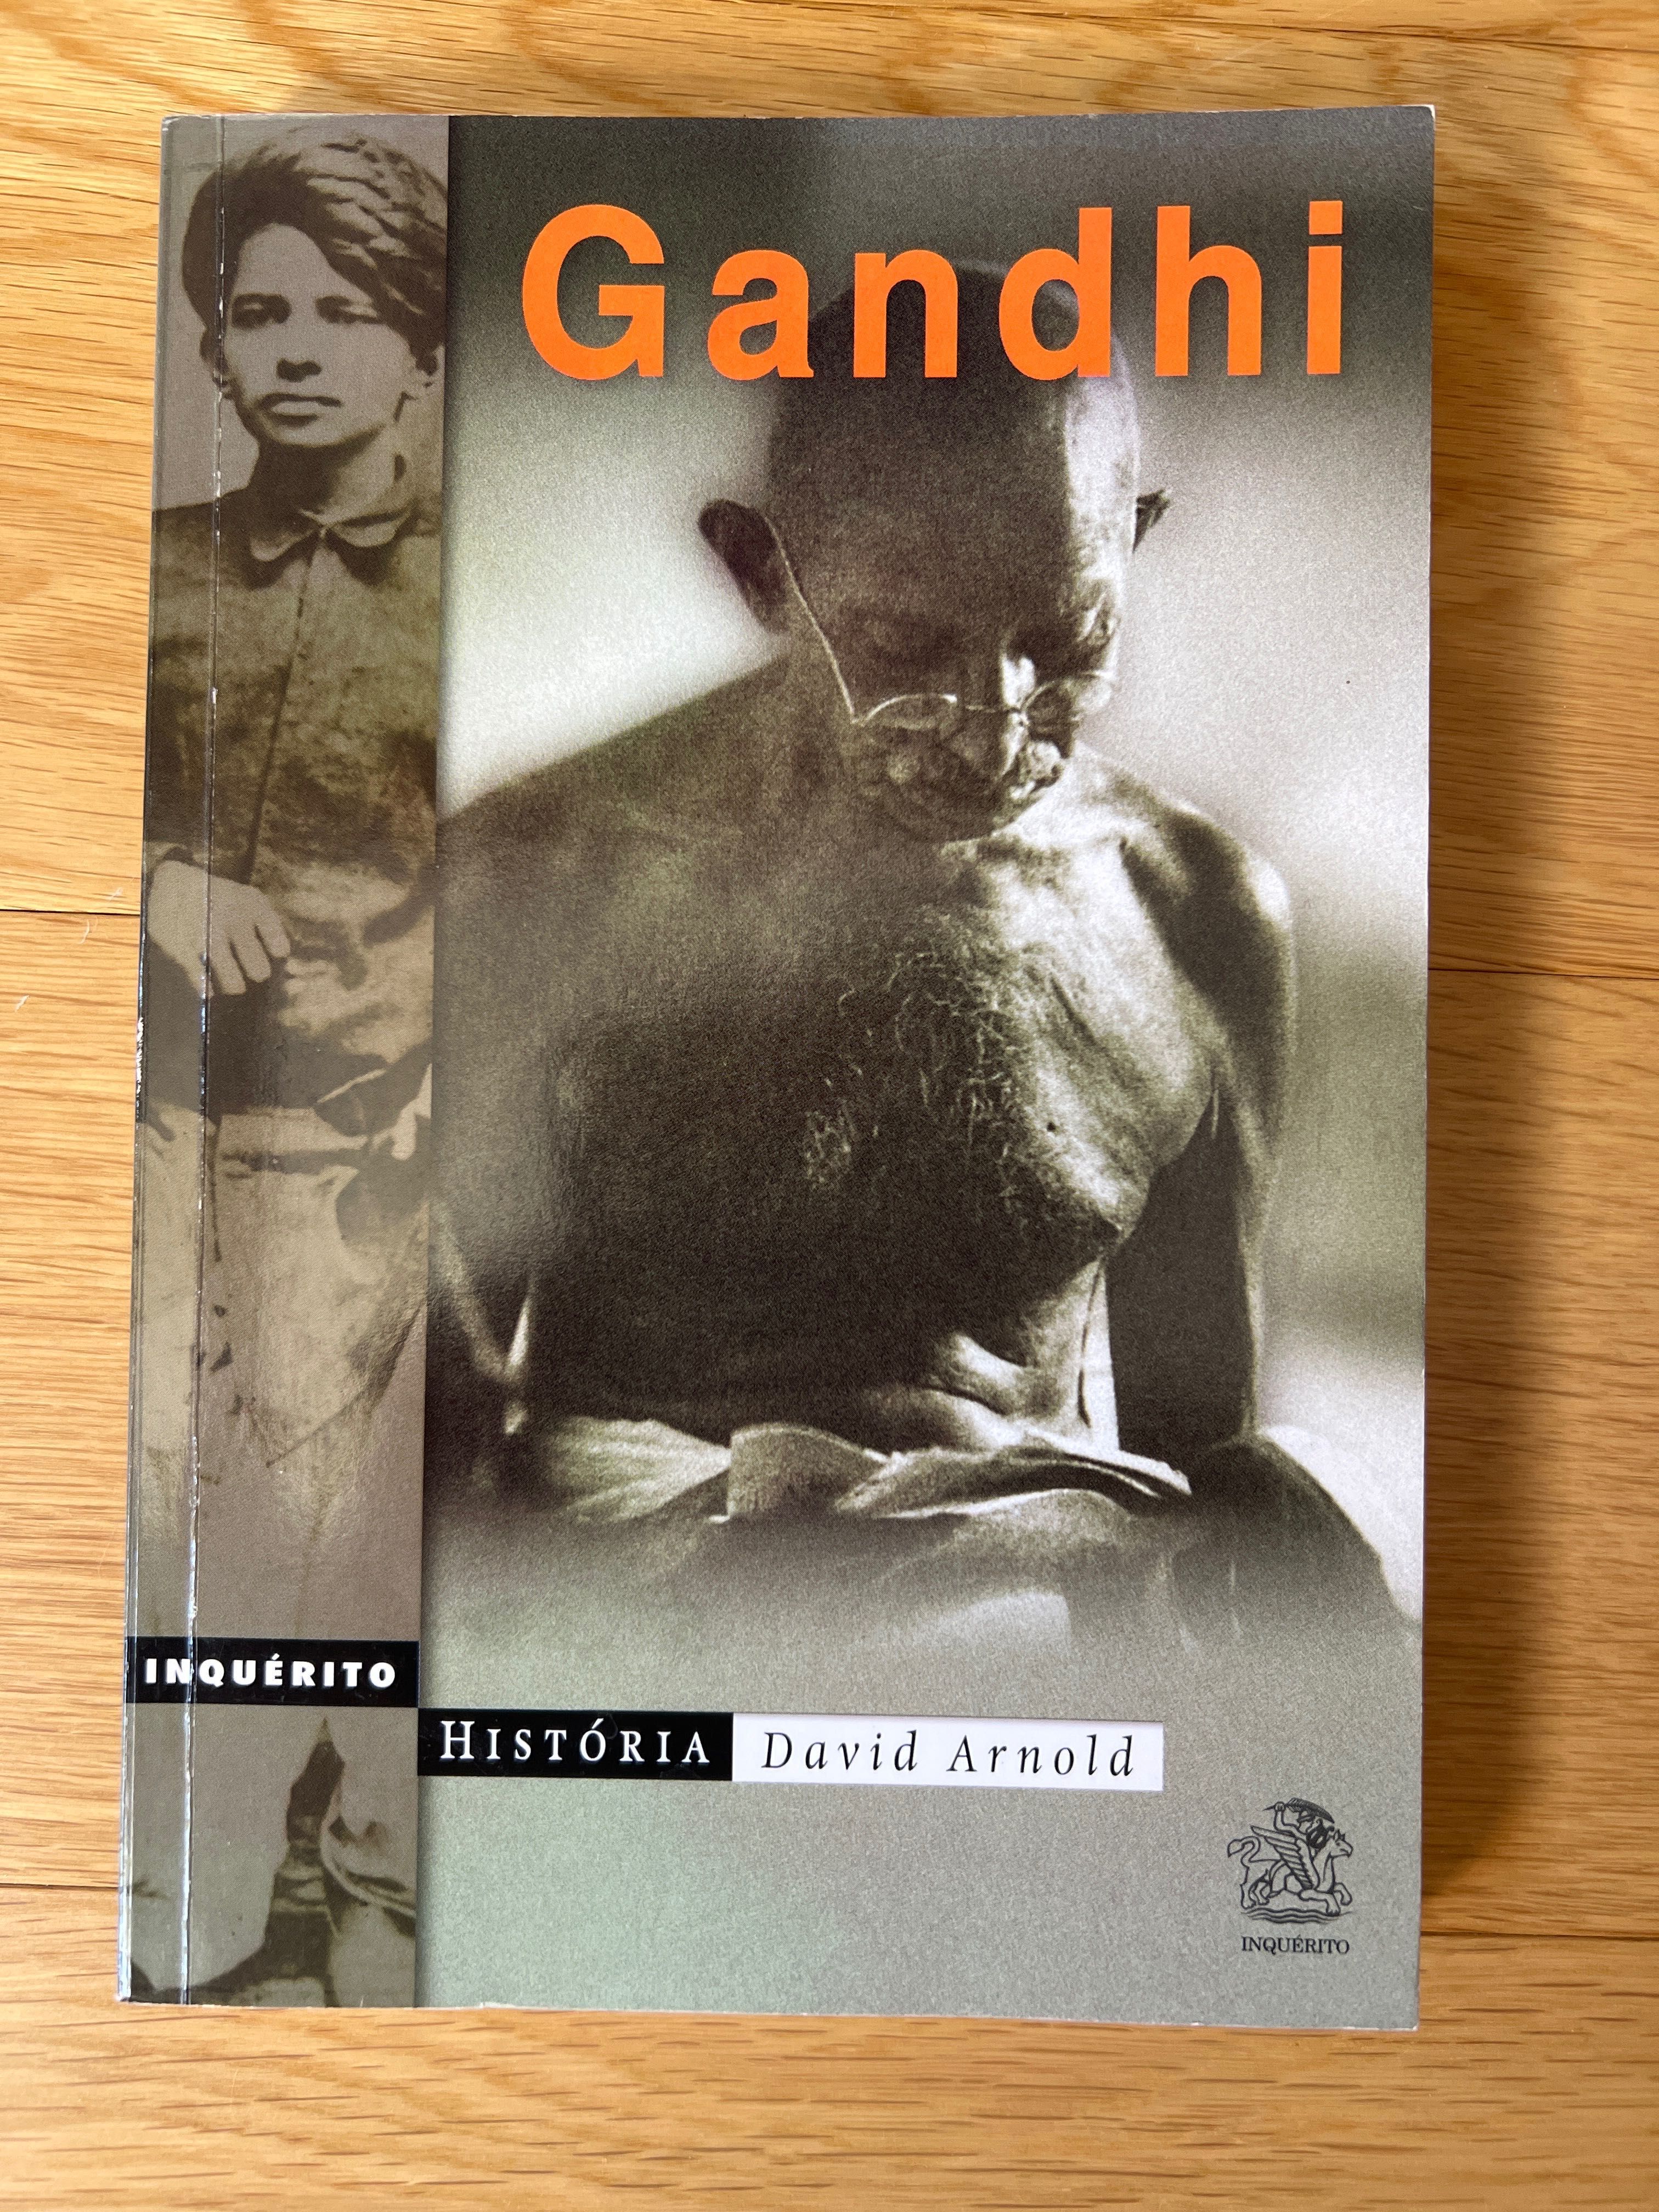 Gandhi - David Arnold